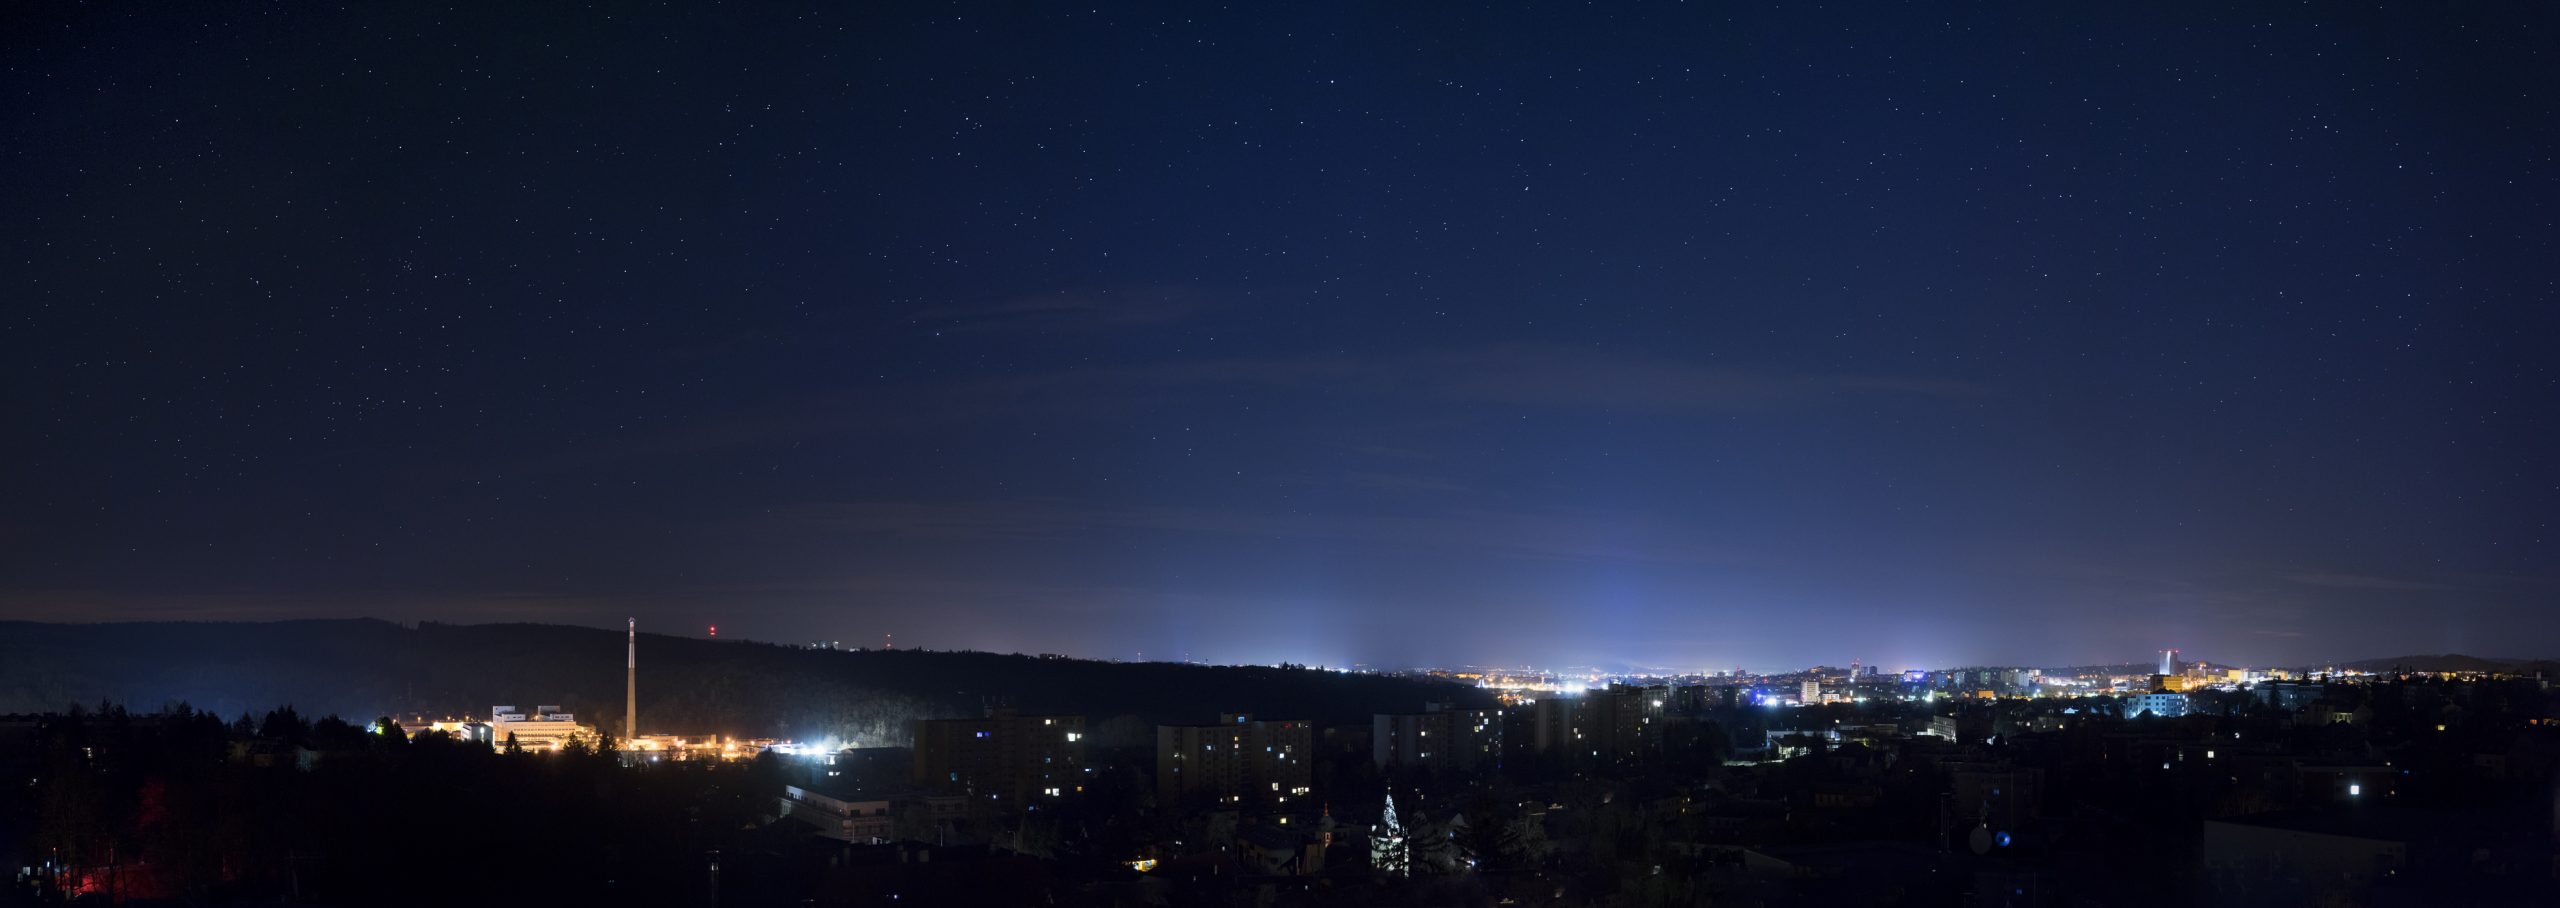 Panorama nočního Brna bez poulišního osvětlení